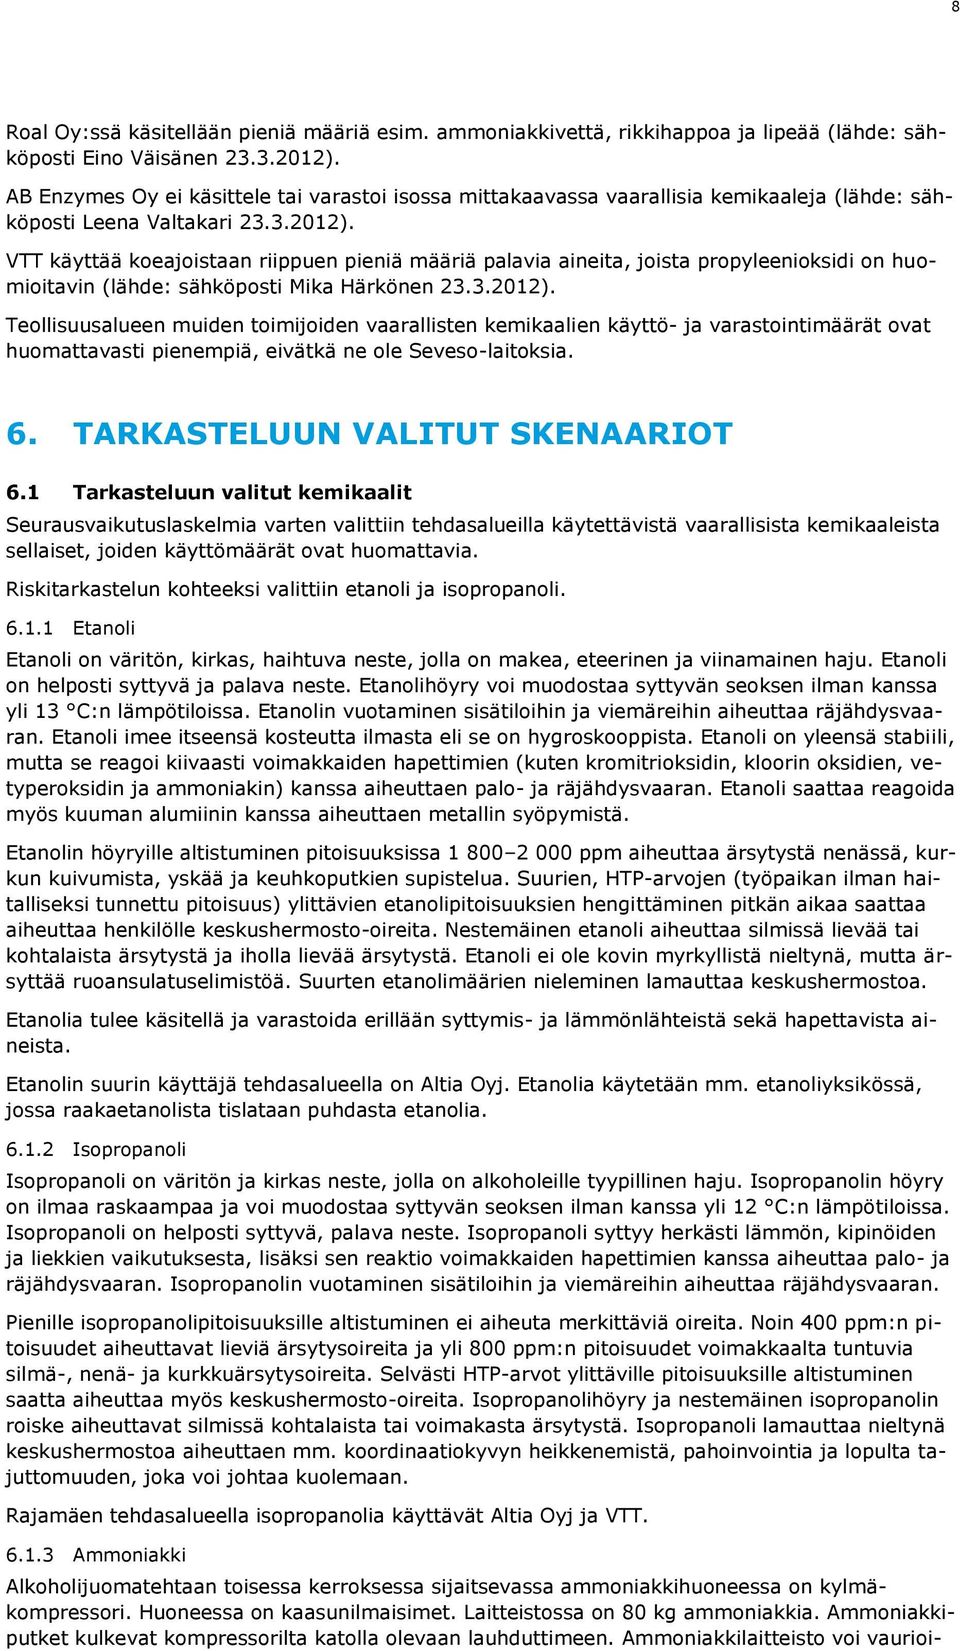 VTT käyttää koeajoistaan riippuen pieniä määriä palavia aineita, joista propyleenioksidi on huomioitavin (lähde: sähköposti Mika Härkönen 23.3.2012).